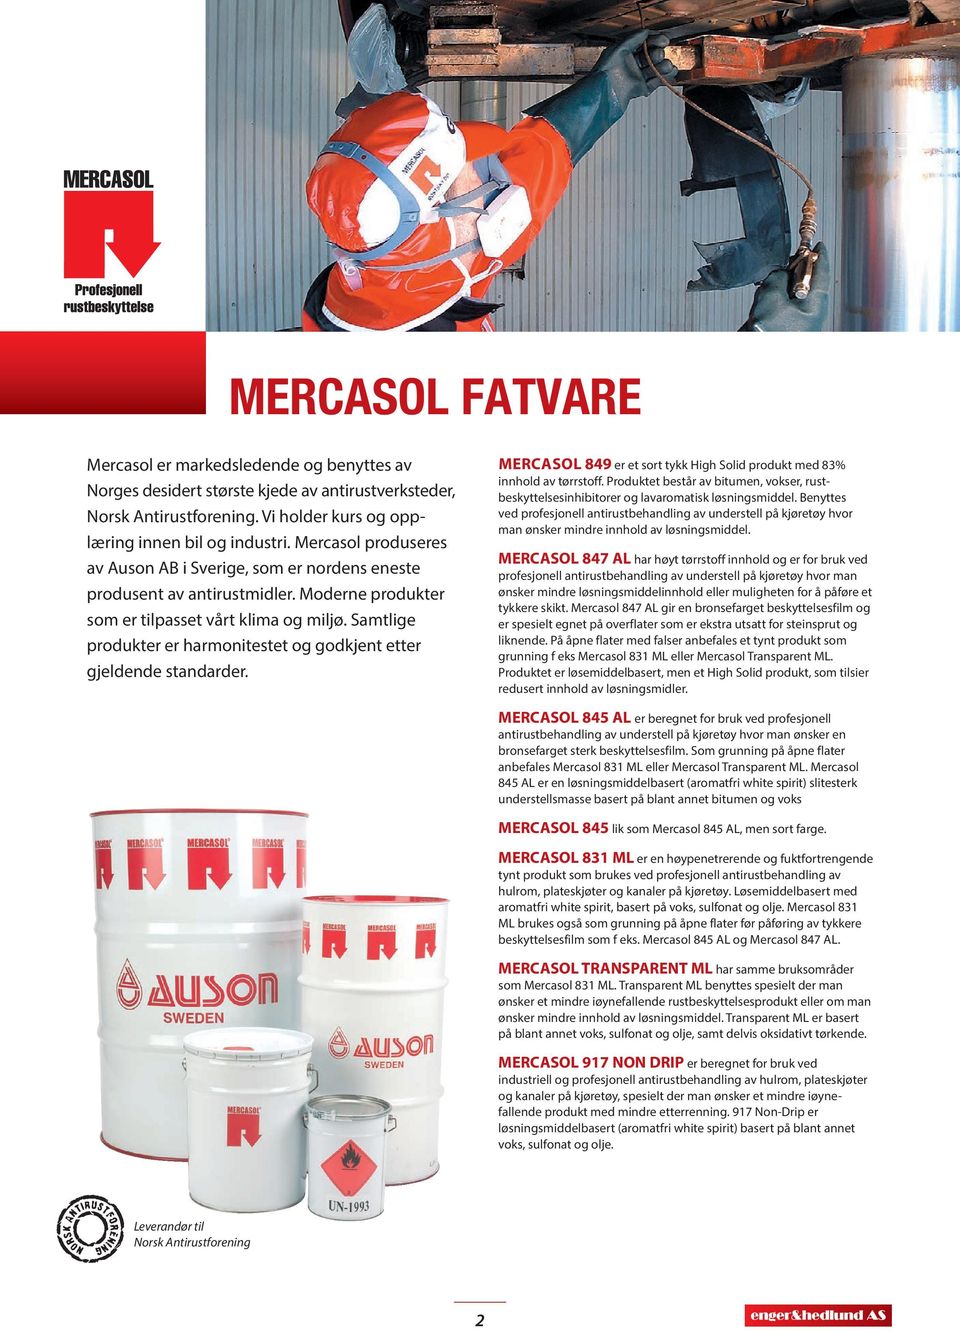 Samtlige produkter er harmonitestet og godkjent etter gjeldende standarder. MERCASOL 849 er et sort tykk High Solid produkt med 83% innhold av tørrstoff.